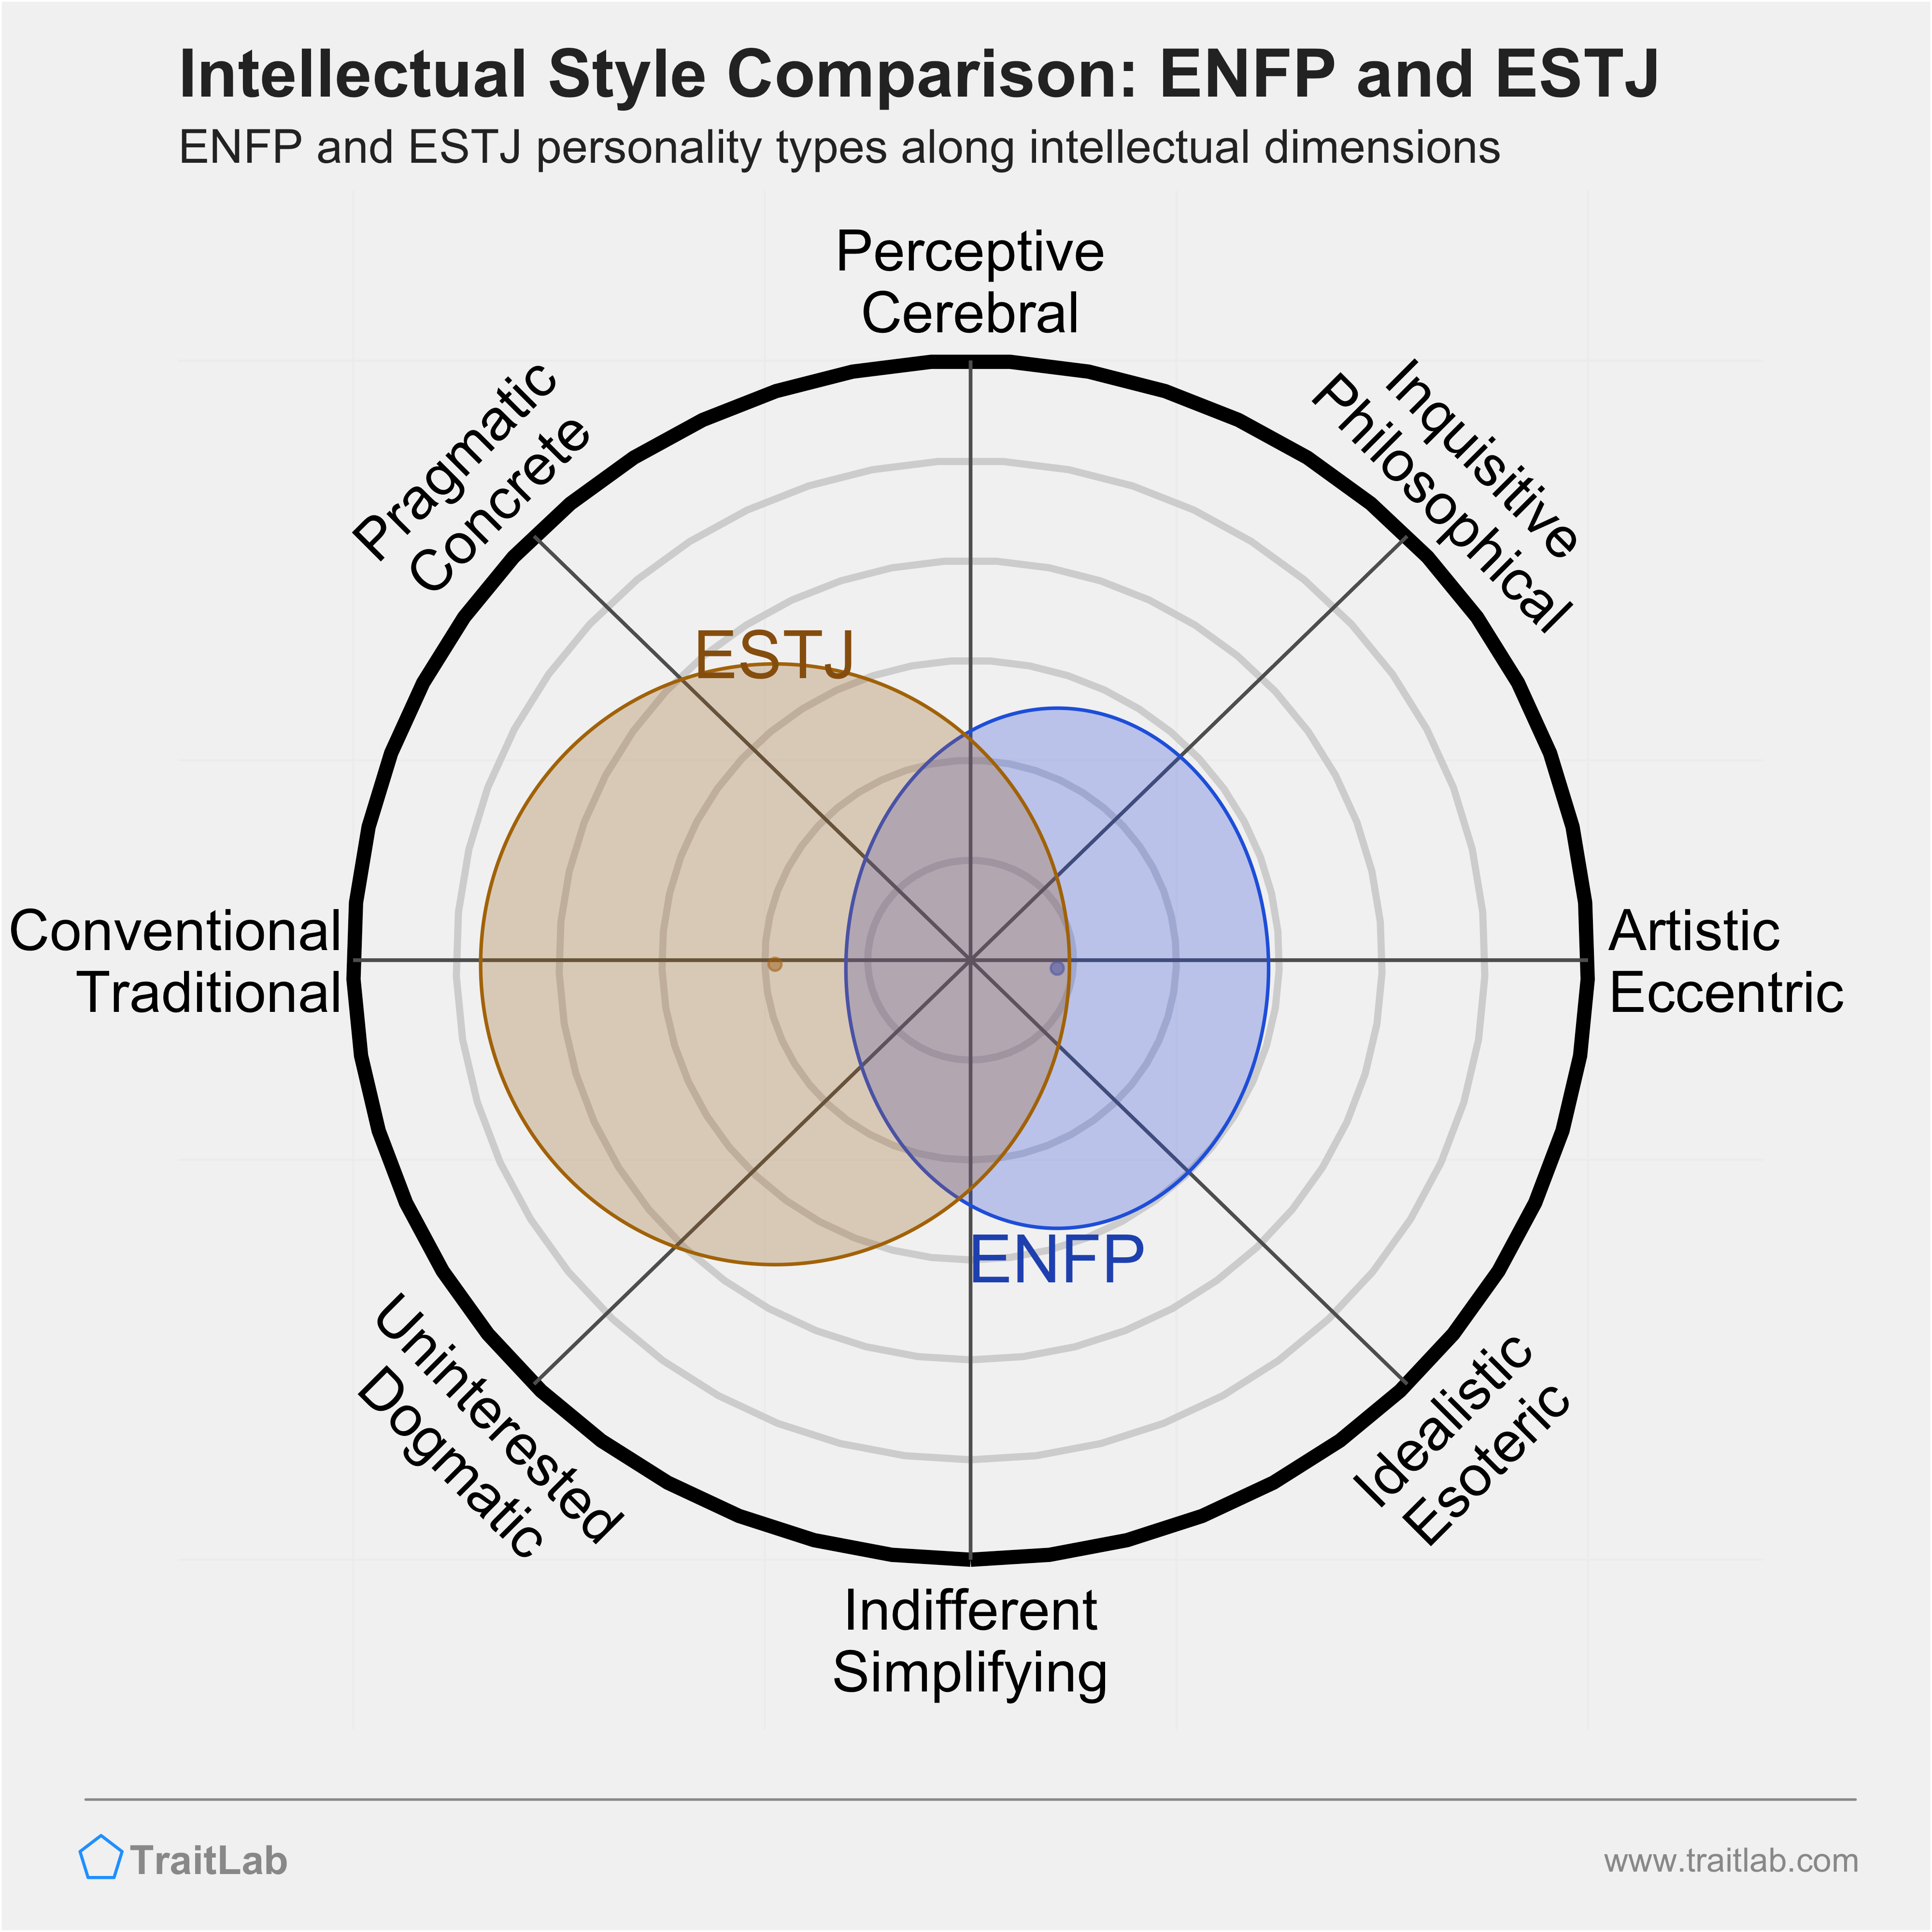 ENFP and ESTJ comparison across intellectual dimensions